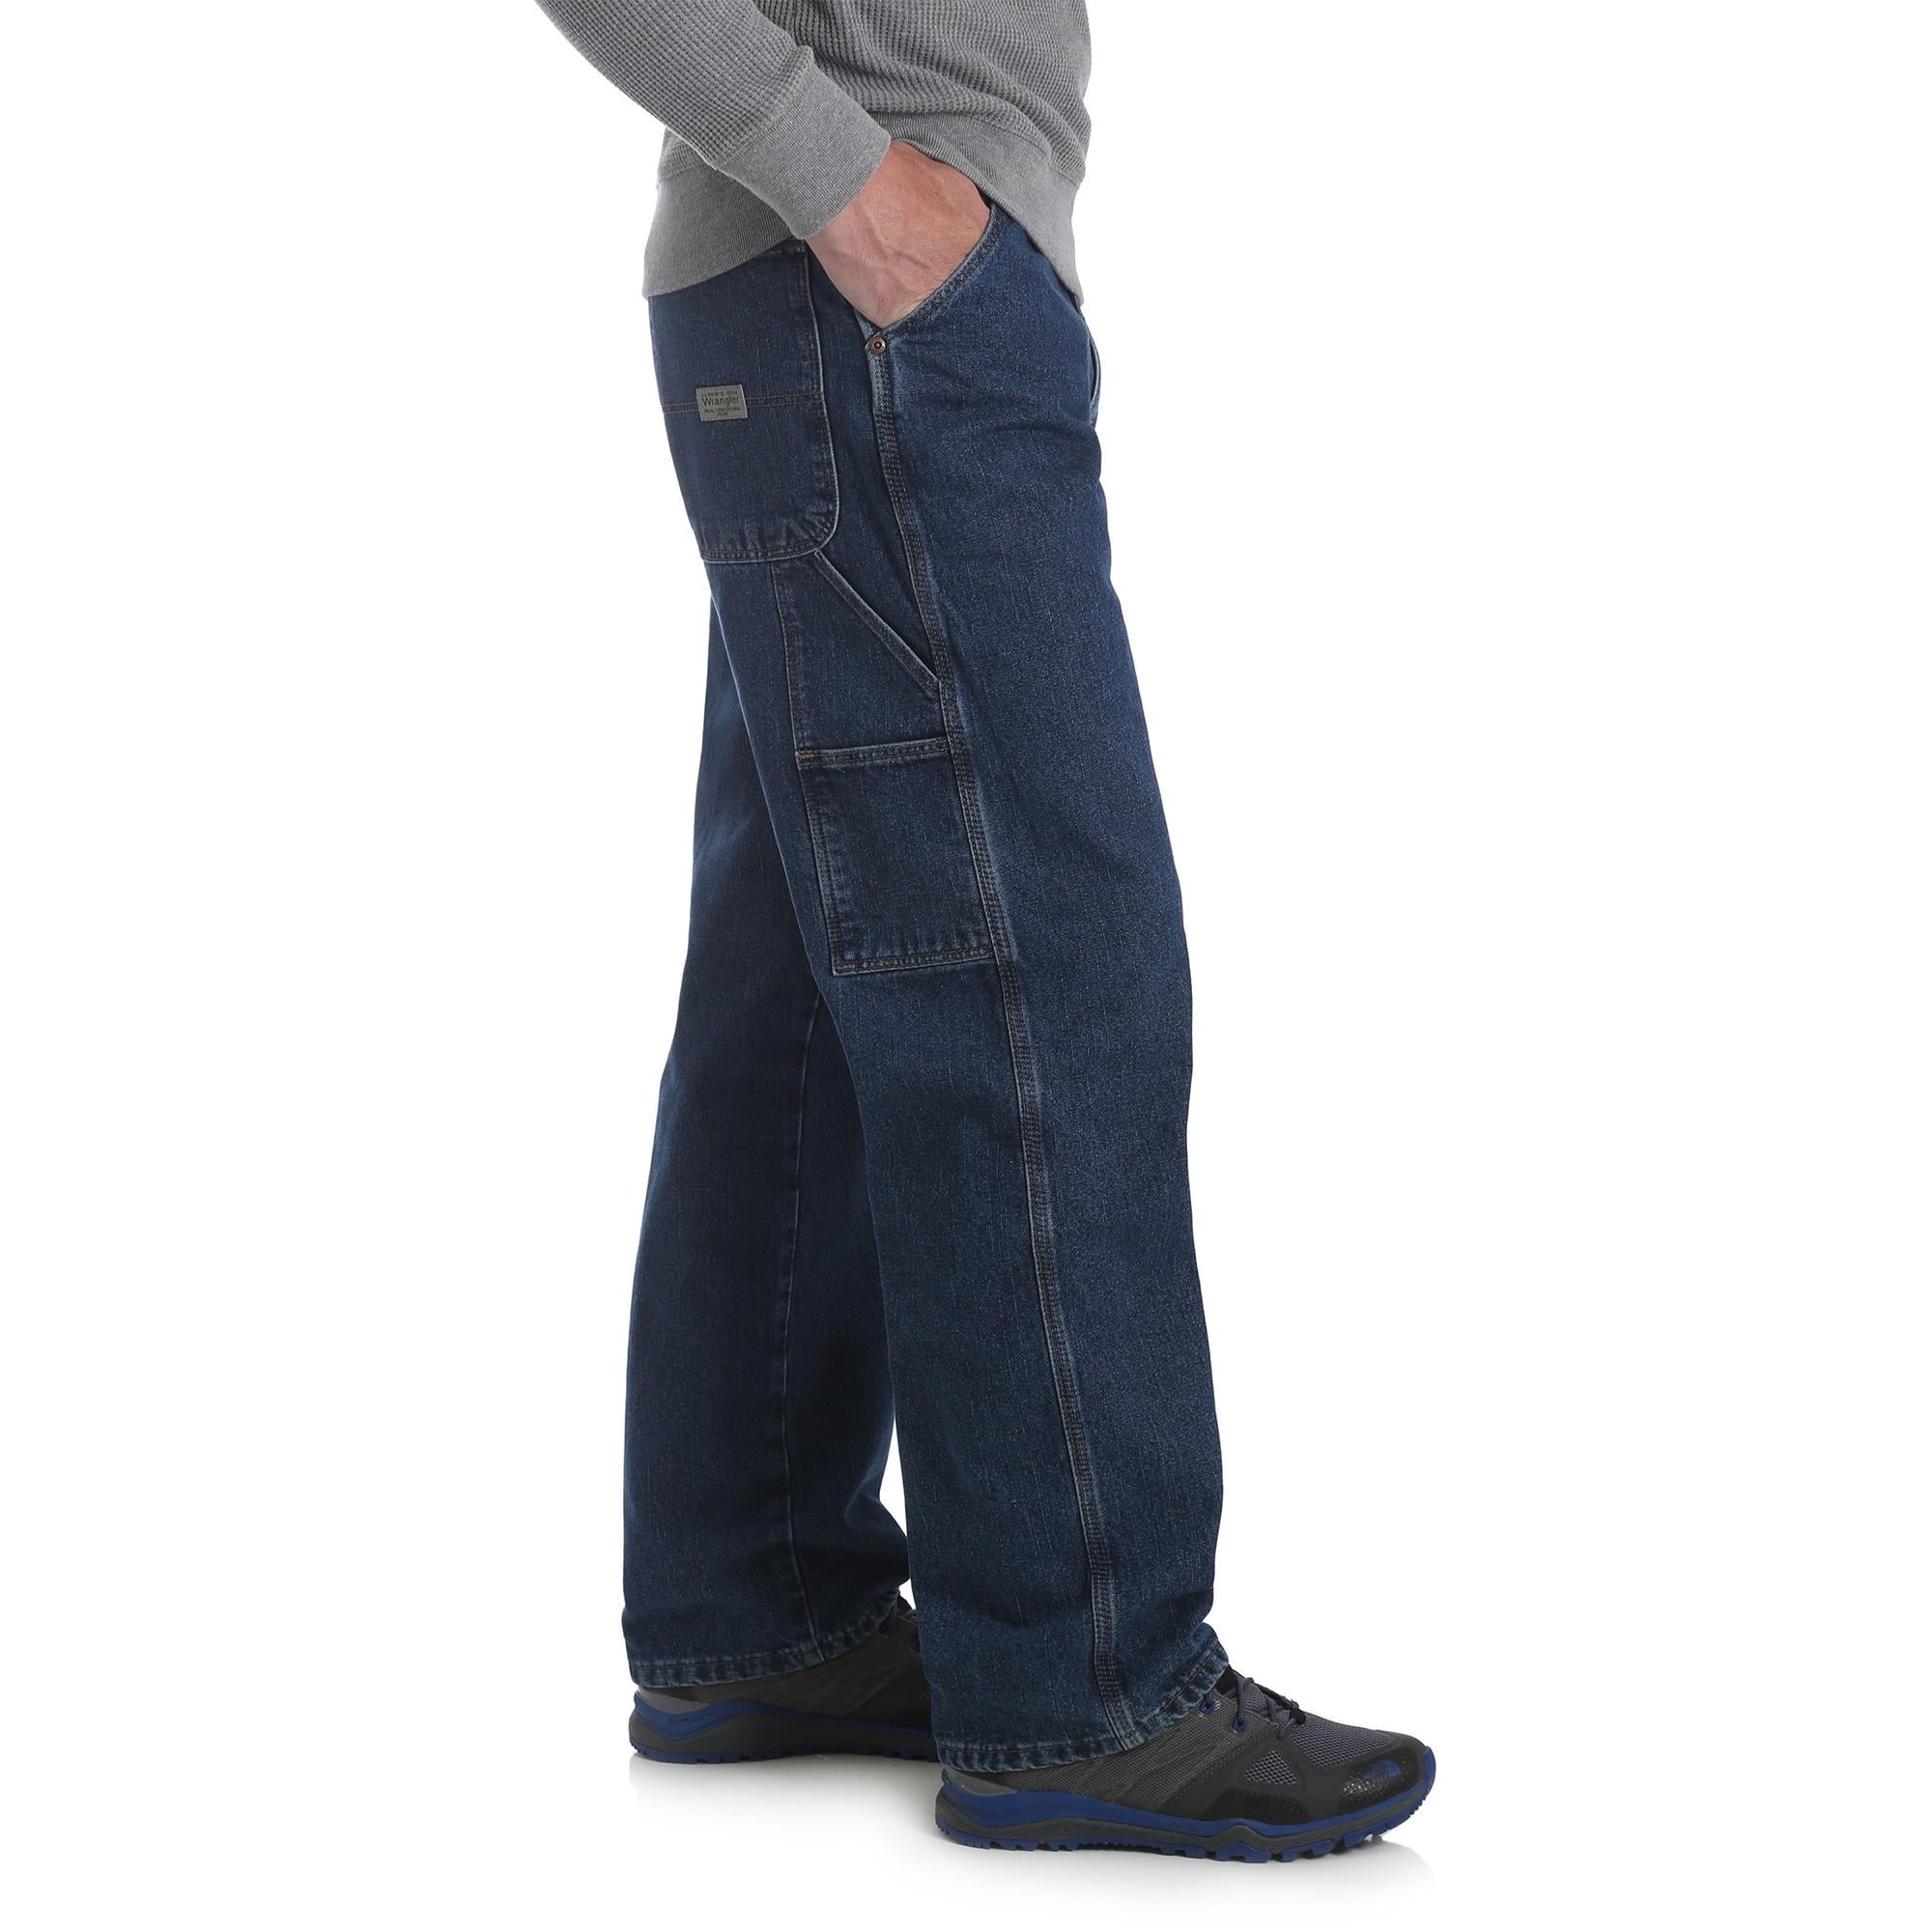 carpenter wrangler jeans